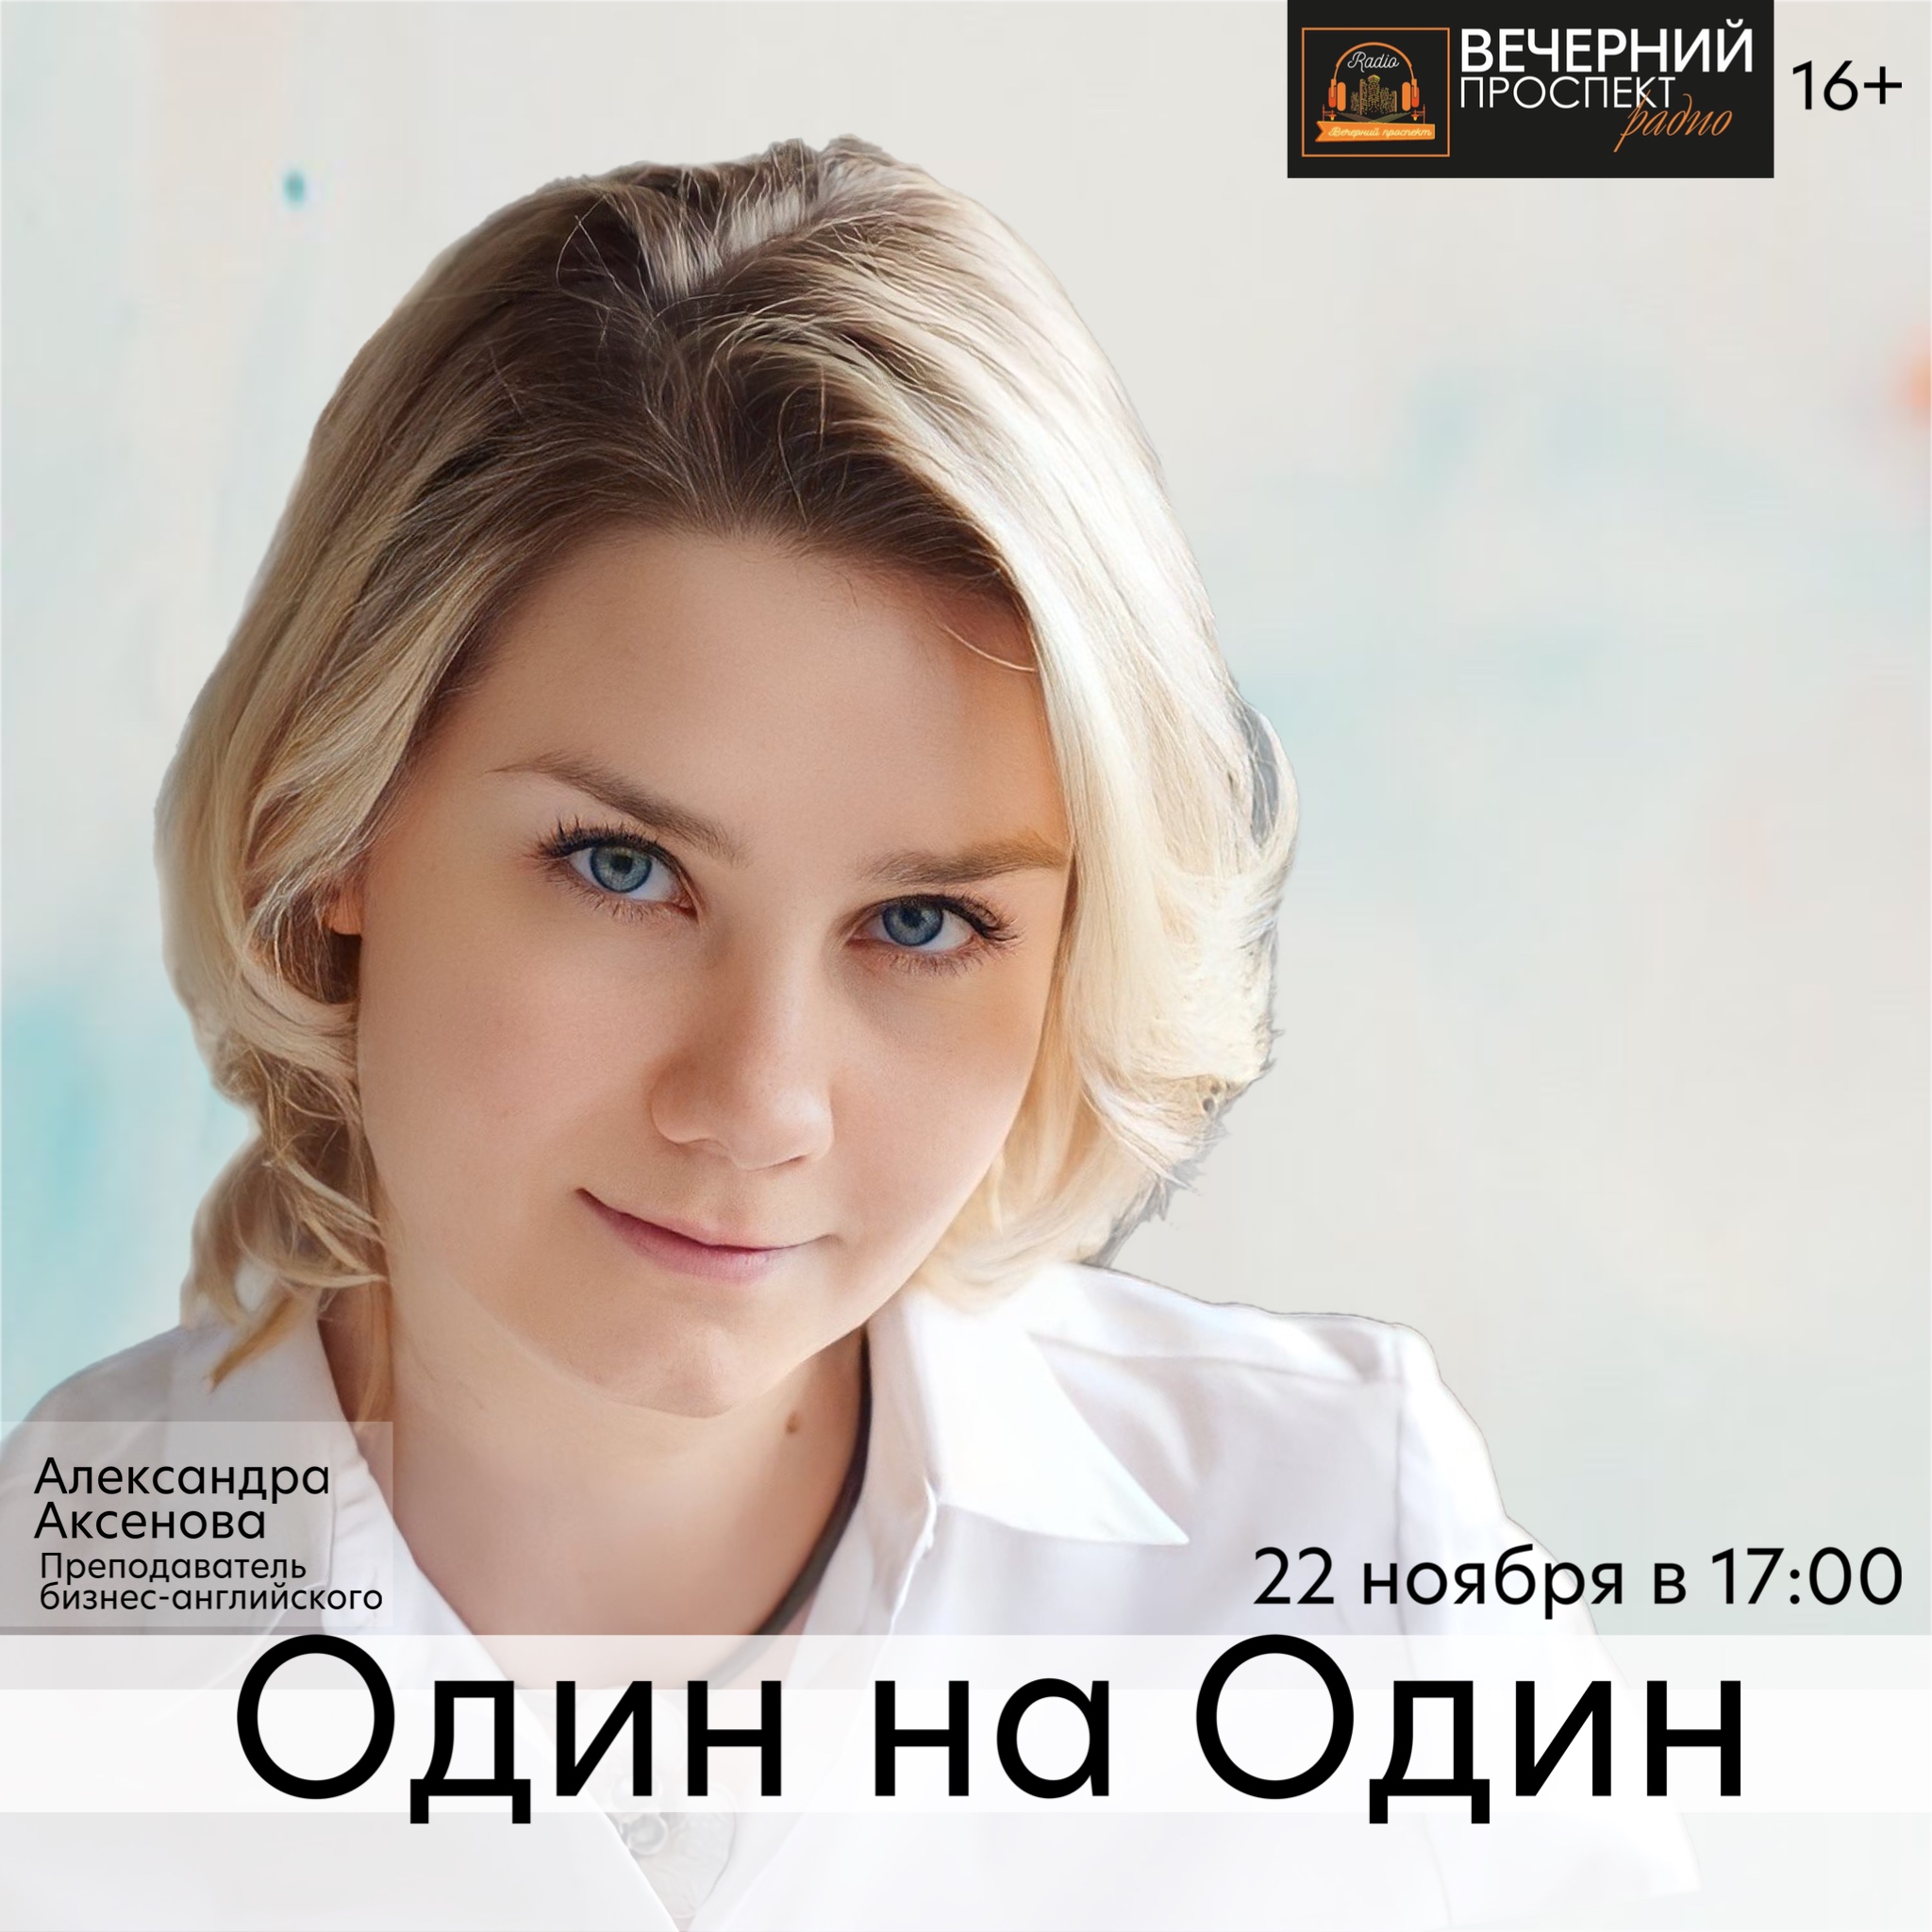 22 ноября с 17:00 до 18:00 в эфире программы «Один на один» преподаватель бизнес-английского Александра Аксенова.